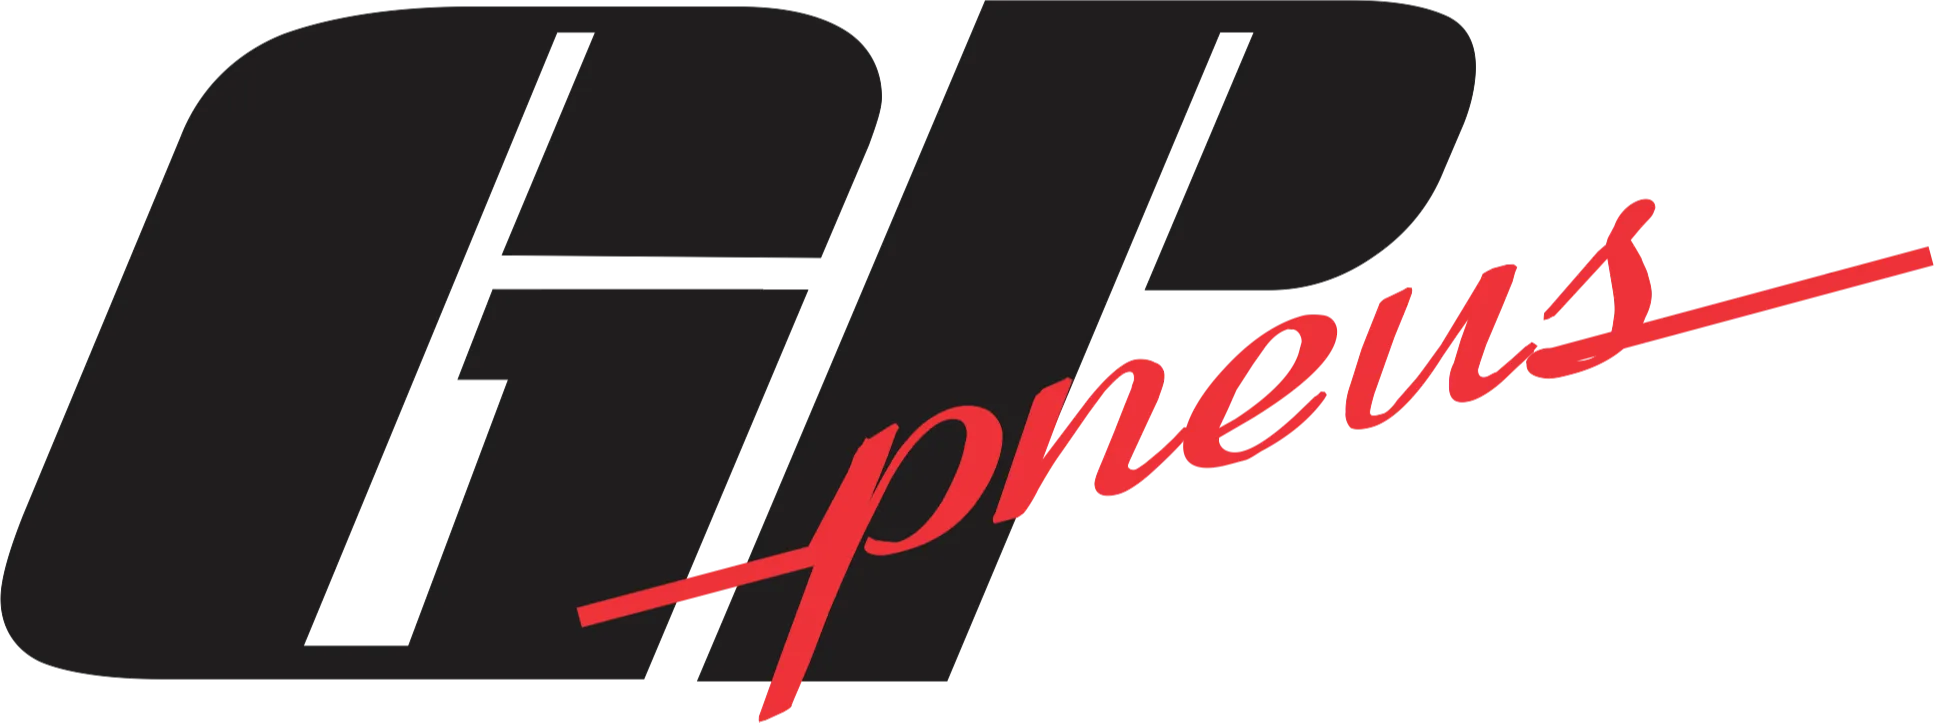 Logomarca escrita GP Pneus em preto e vermelho.